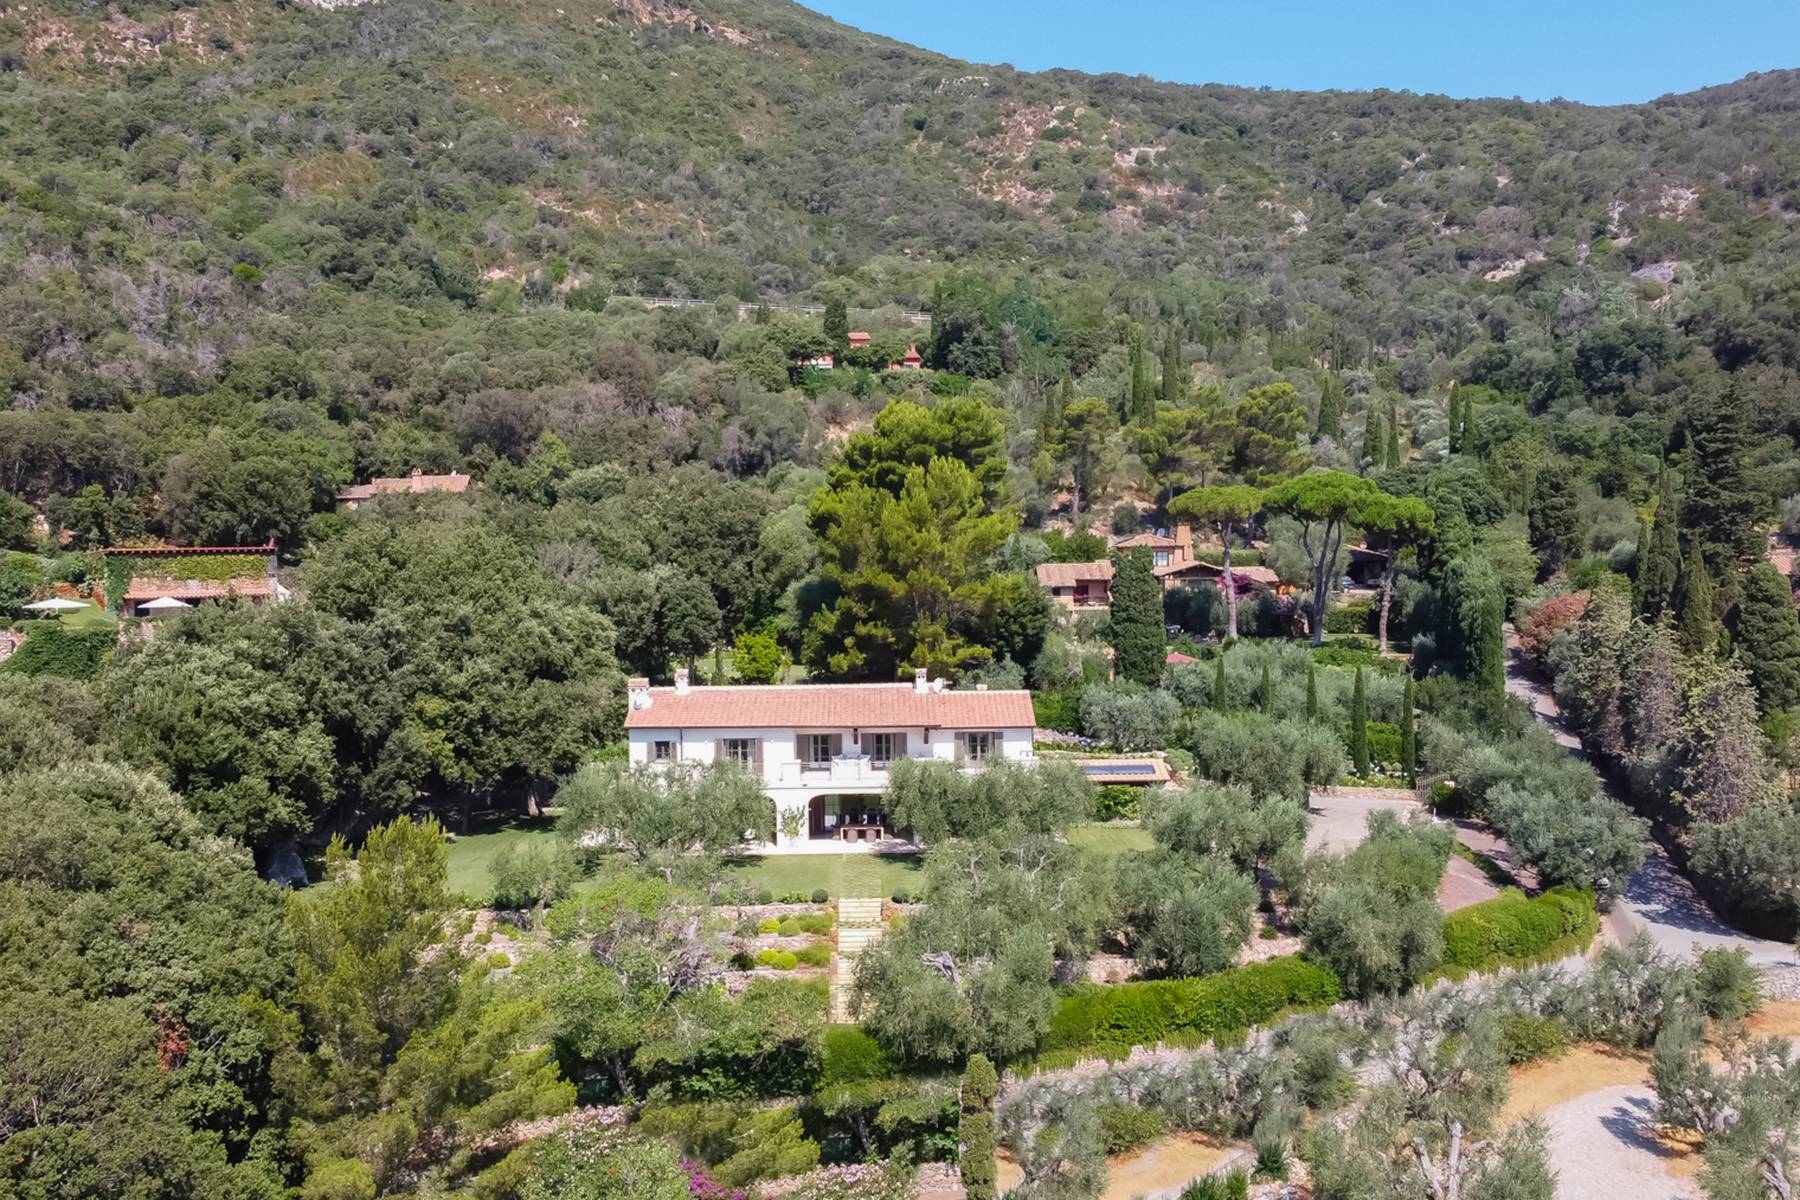 Villa in Vendita a Monte Argentario: 5 locali, 350 mq - Foto 1